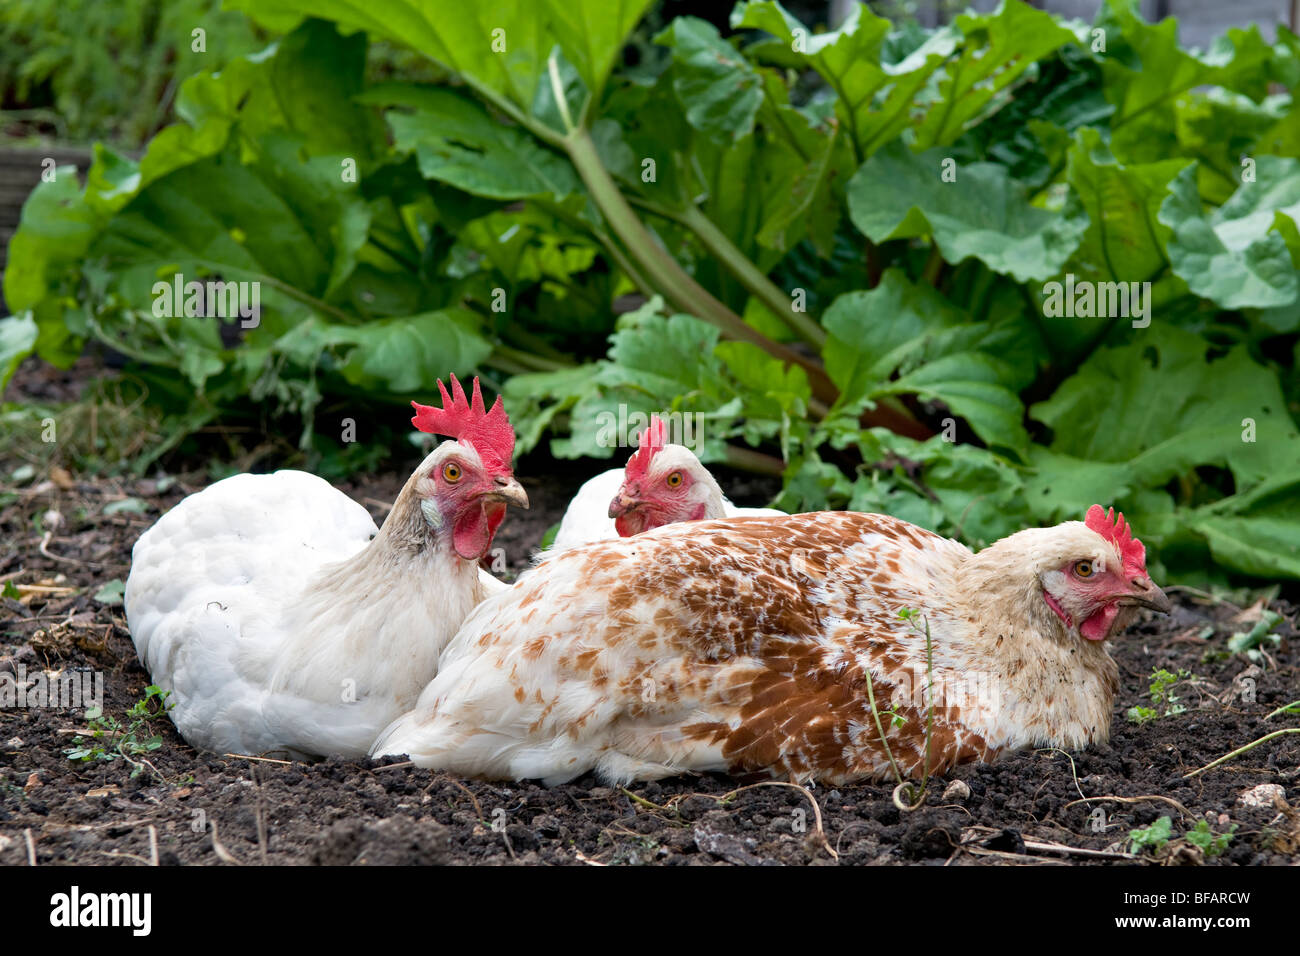 Los pollos, tipo White Star, rhode y una estrella marrón ámbar, en medio de un baño de tierra con plantas de ruibarbo detrás de ellos. Foto de stock